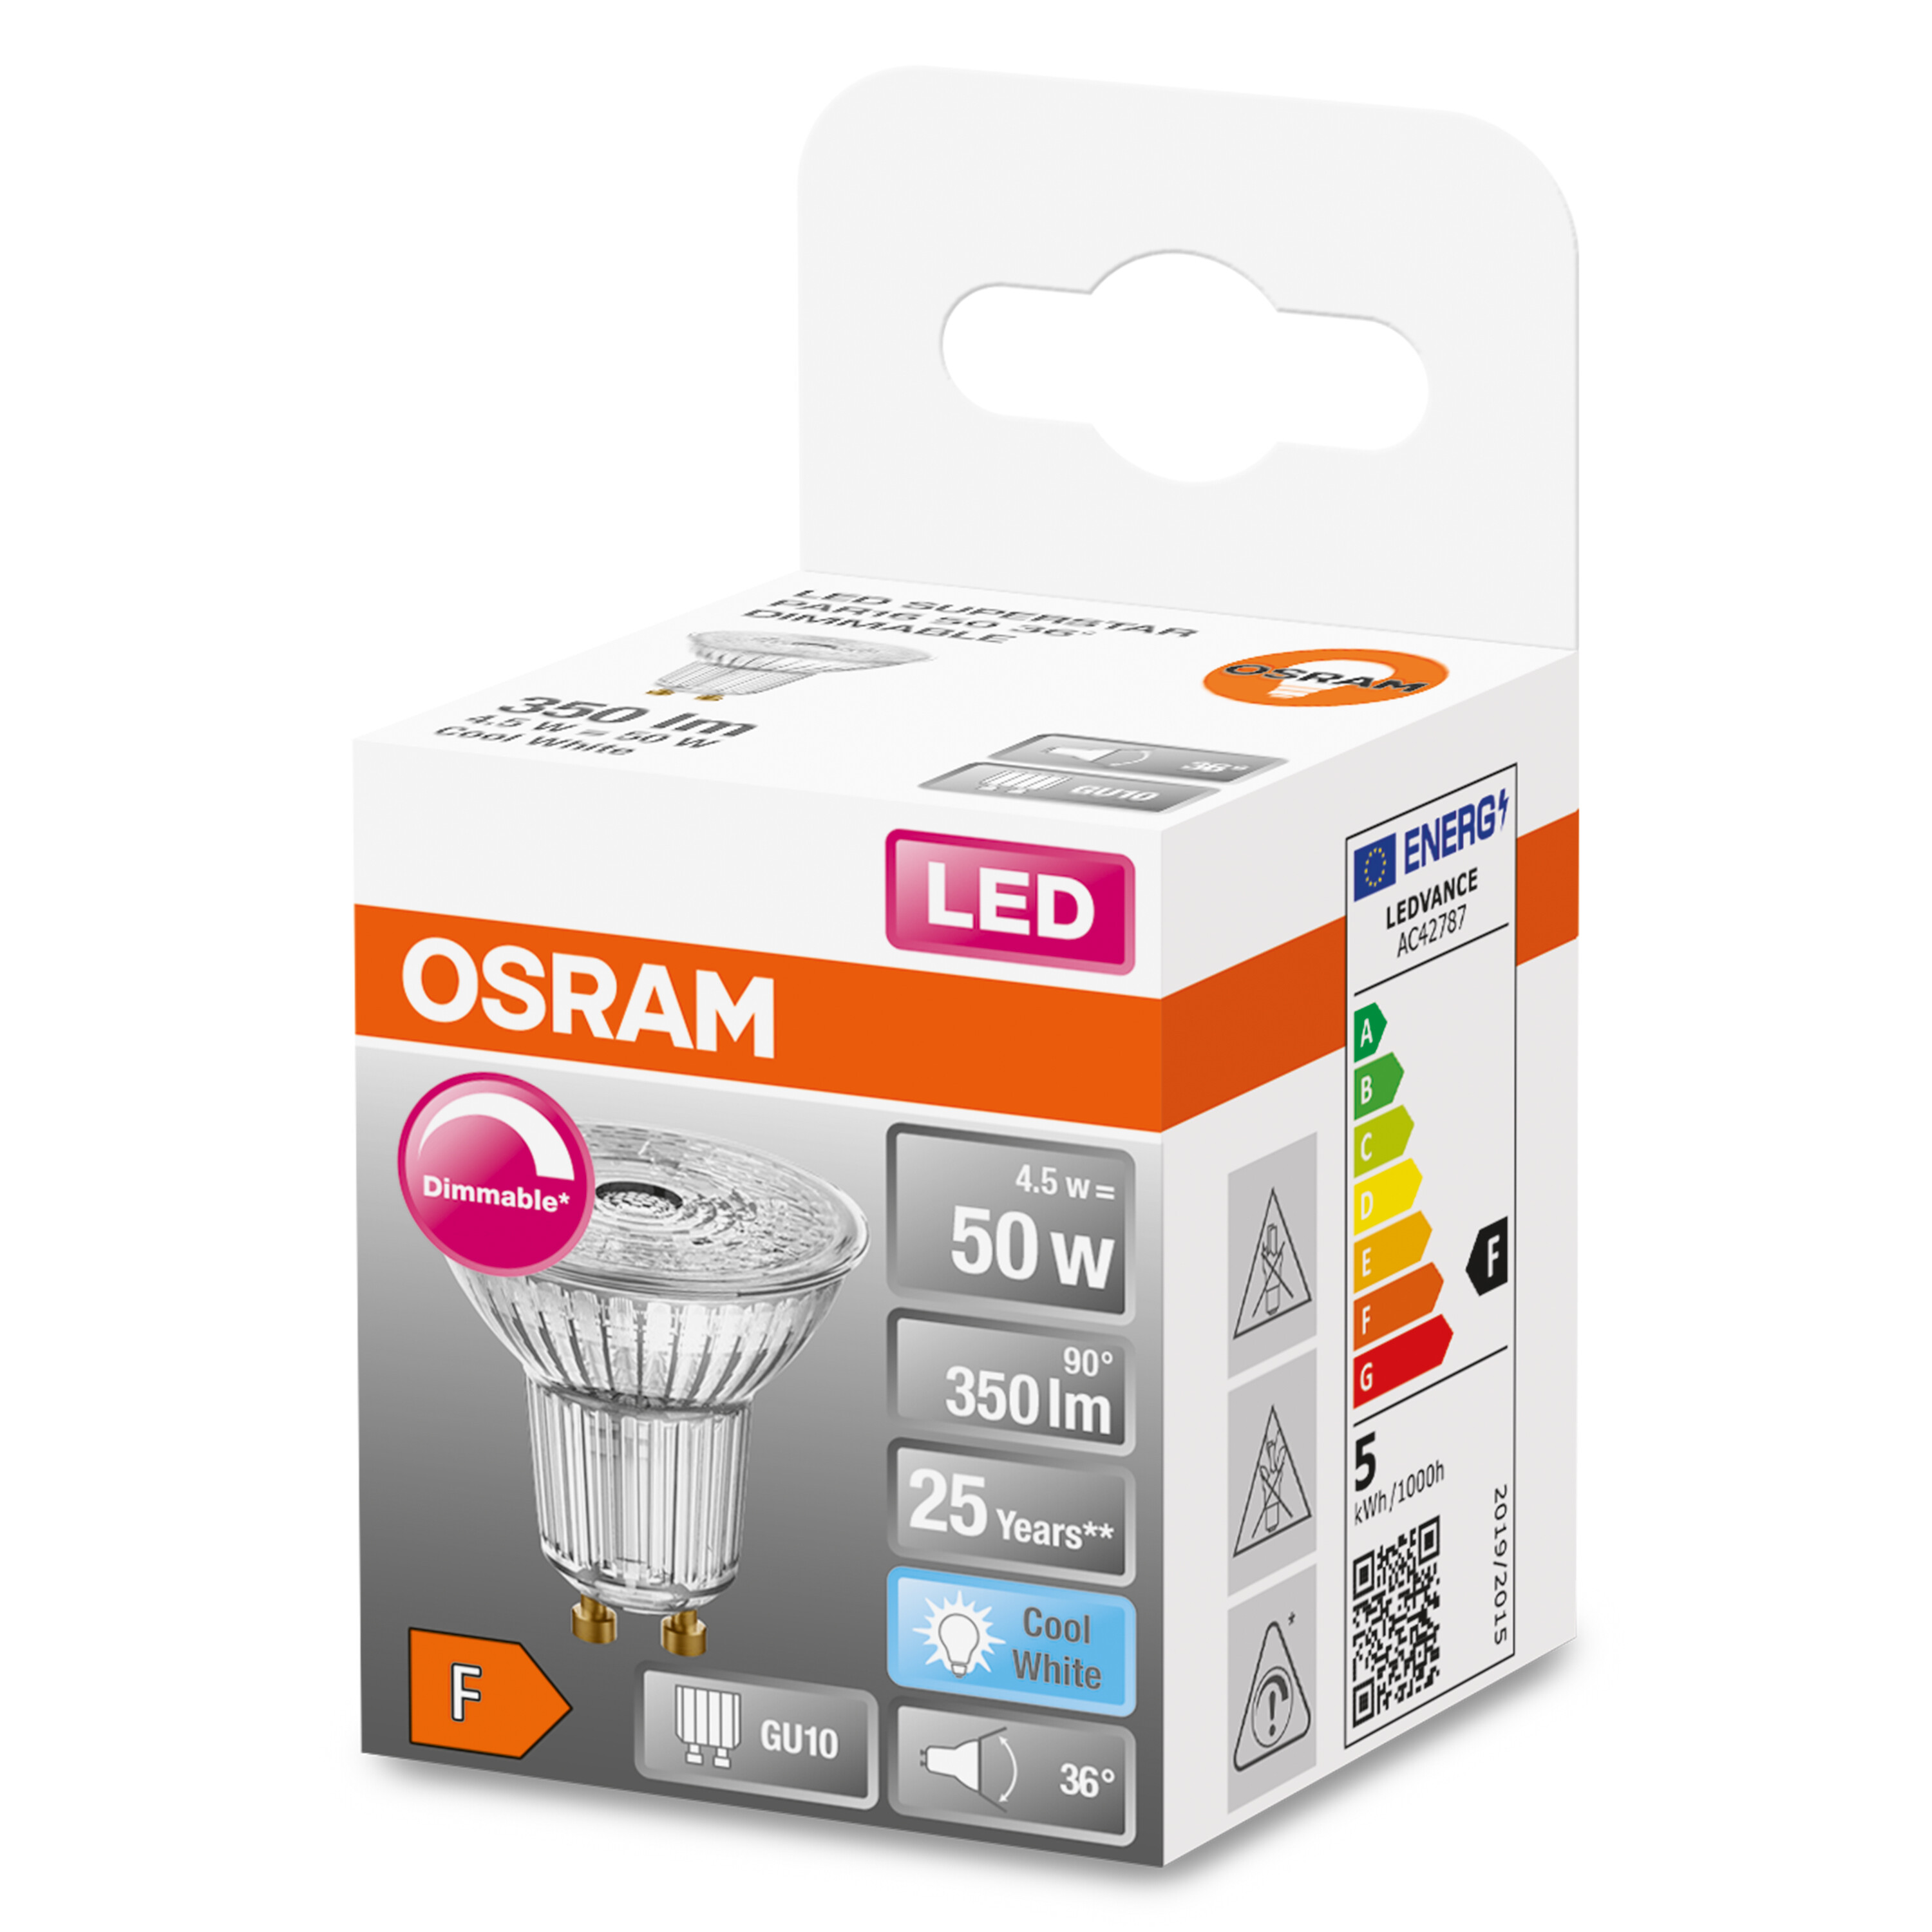 OSRAM  LED SUPERSTAR PAR16 Lampe 350 LED Kaltweiß Lumen